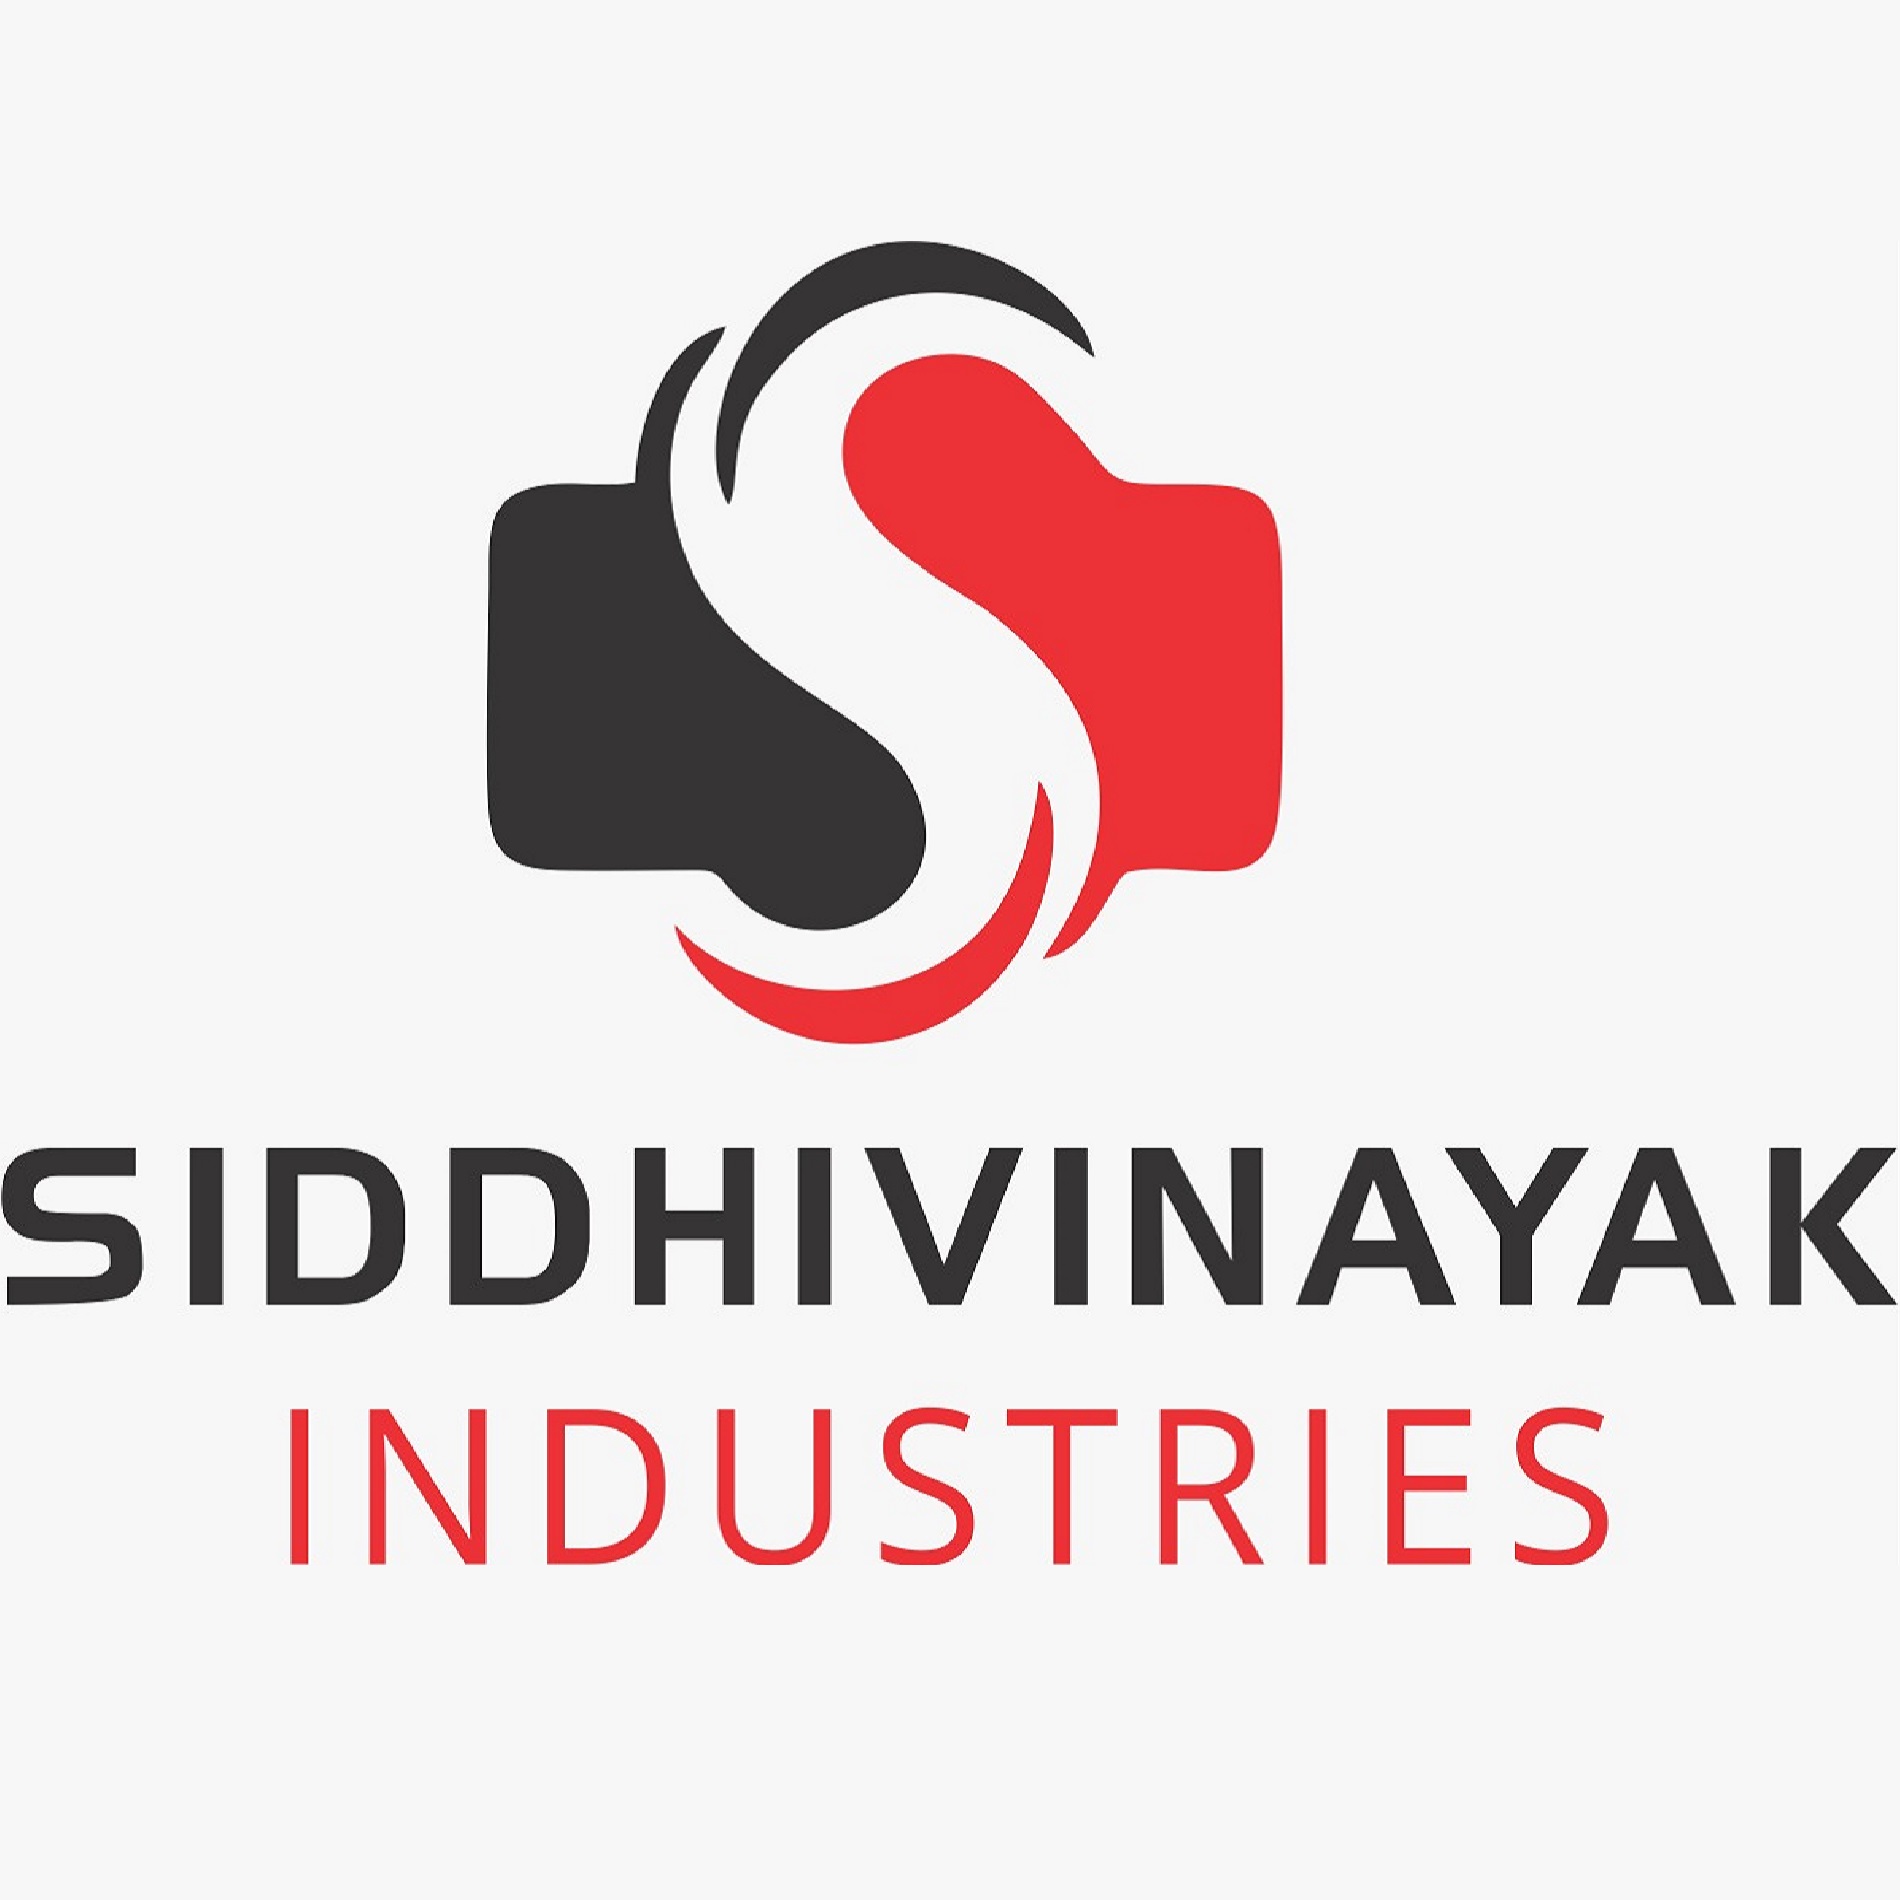 Siddhivinayak Industries|Equipment Supplier|Industrial Services